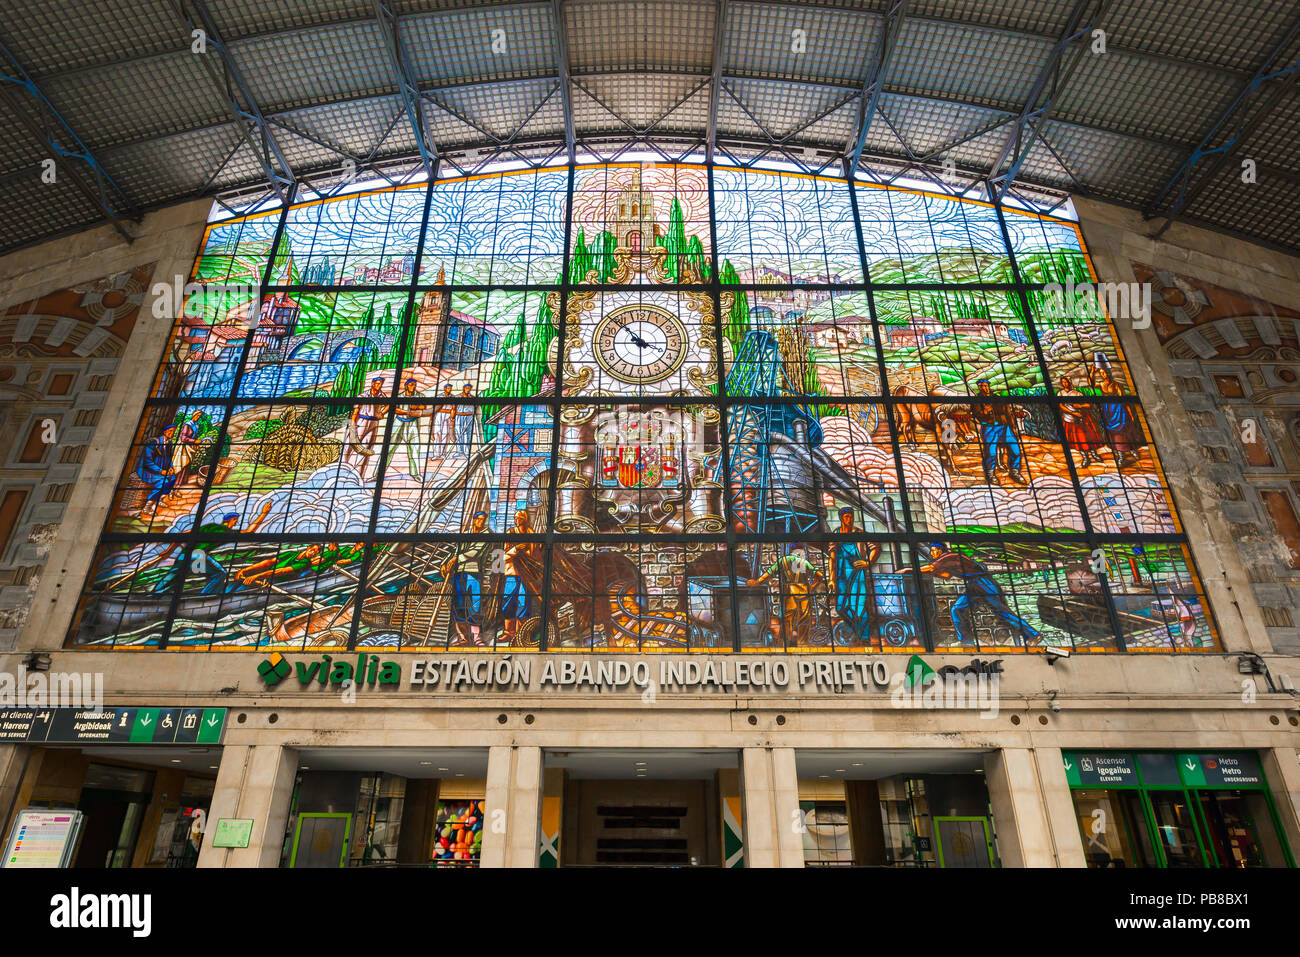 Bilbao Bahnhof, mit Blick auf die bunten Glasfenster in der großen ankunftshalle Im Bahnhof Abando, Bilbao, Nordspanien. Stockfoto